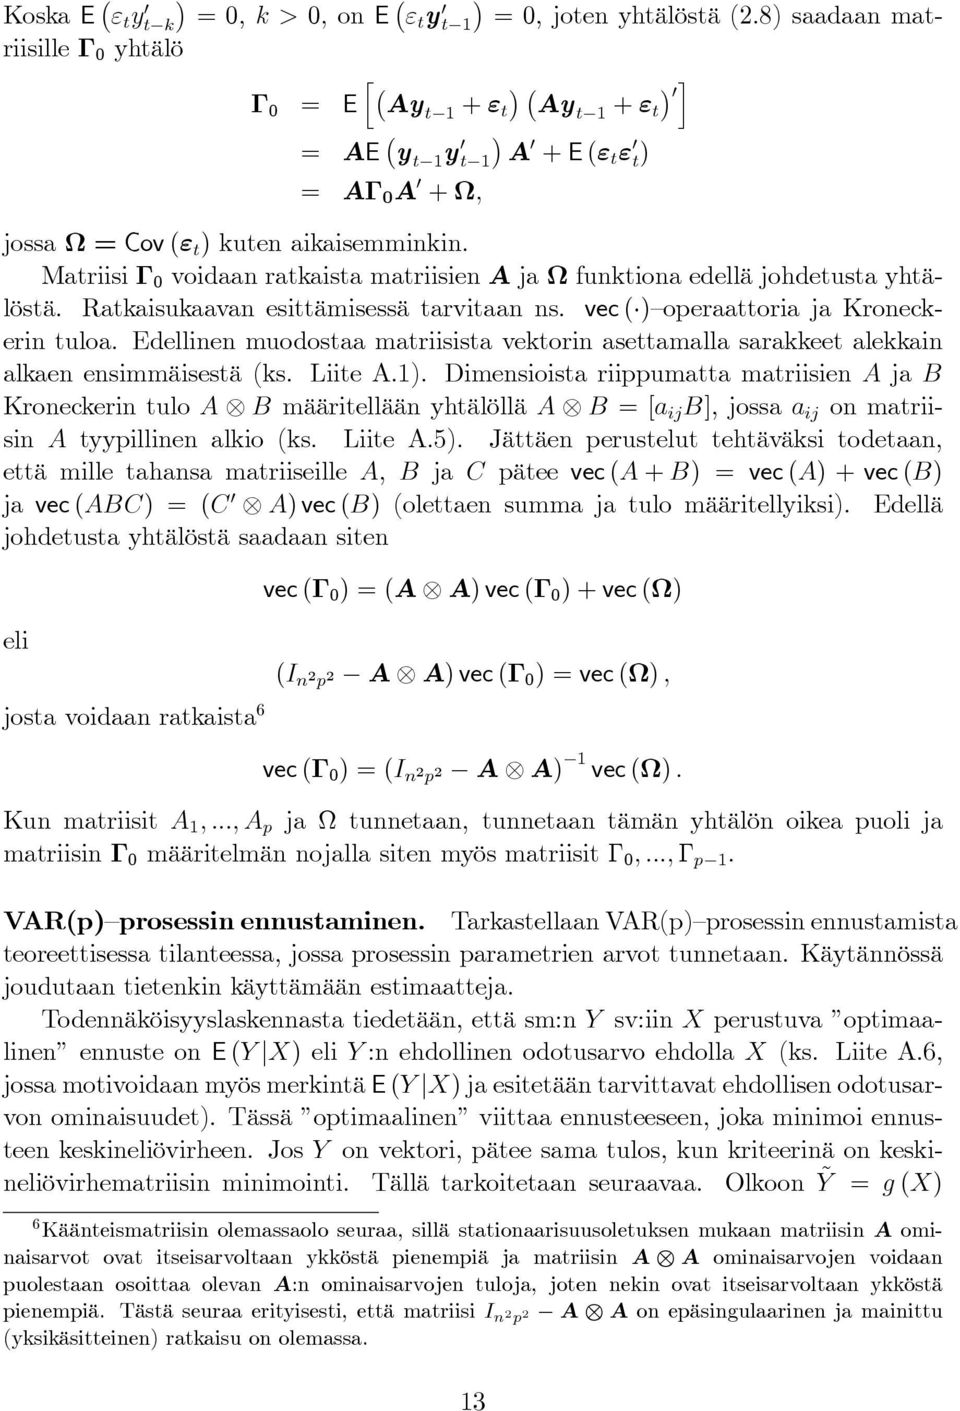 Matriisi Γ 0 voidaan ratkaista matriisien A ja Ω funktiona edellä johdetusta yhtälöstä. Ratkaisukaavan esittämisessä tarvitaan ns. vec ( ) operaattoria ja Kroneckerin tuloa.